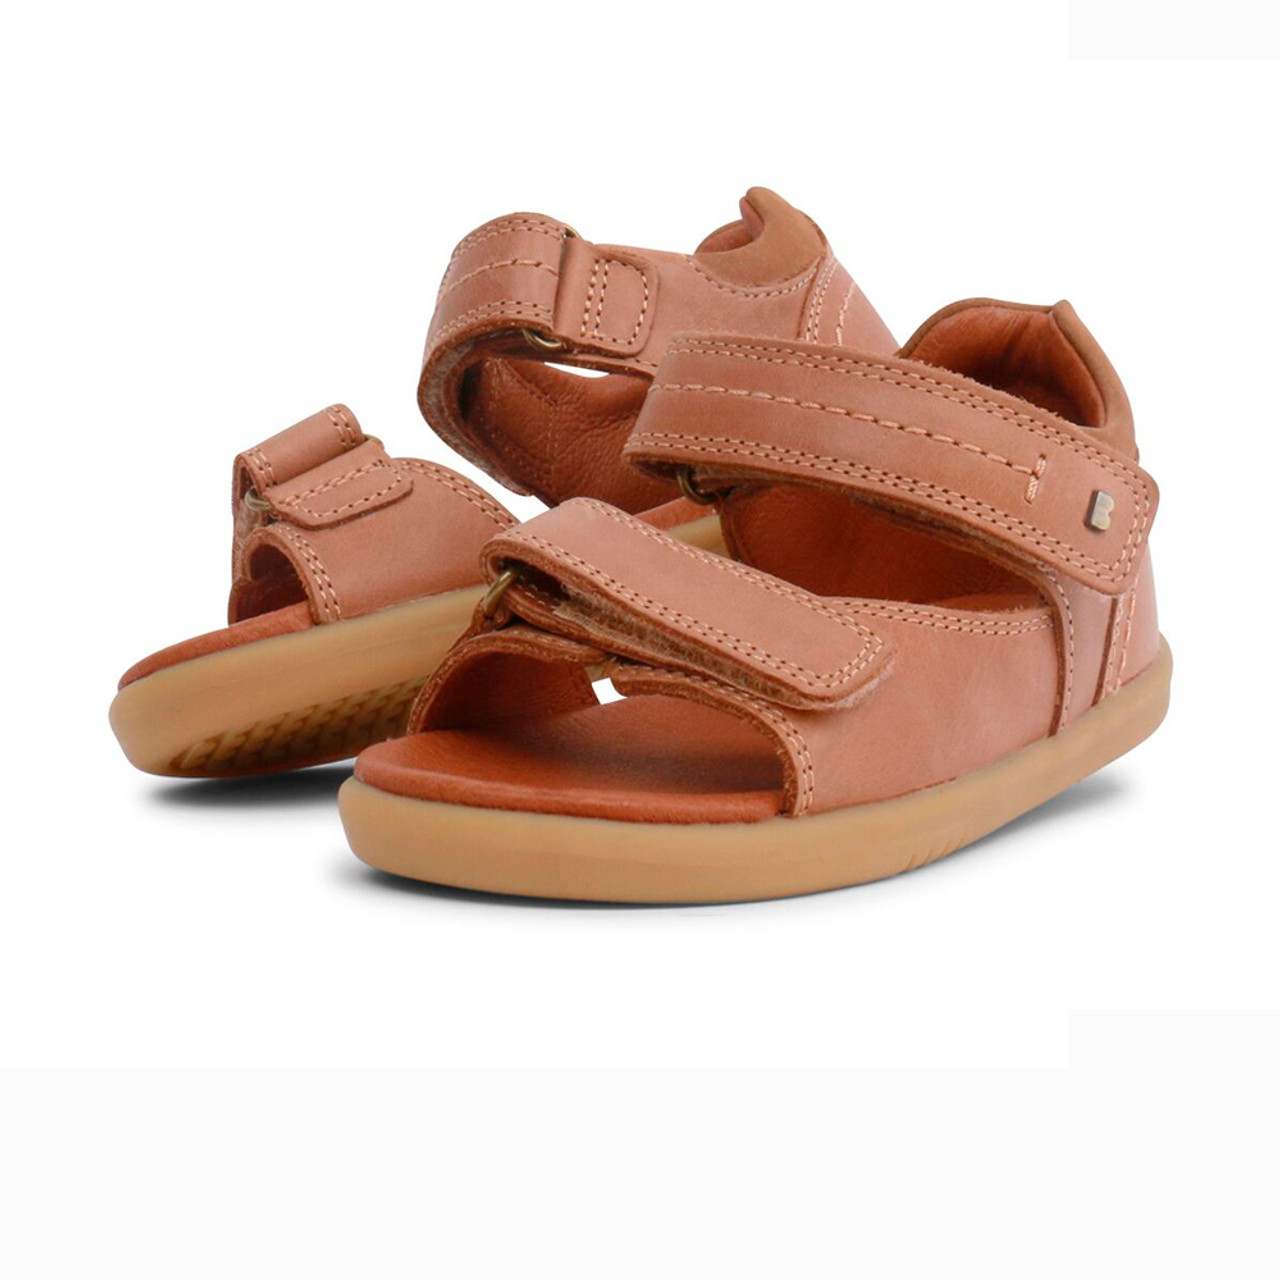 IWalk Sandal - Driftwood | Footwear | Bobux